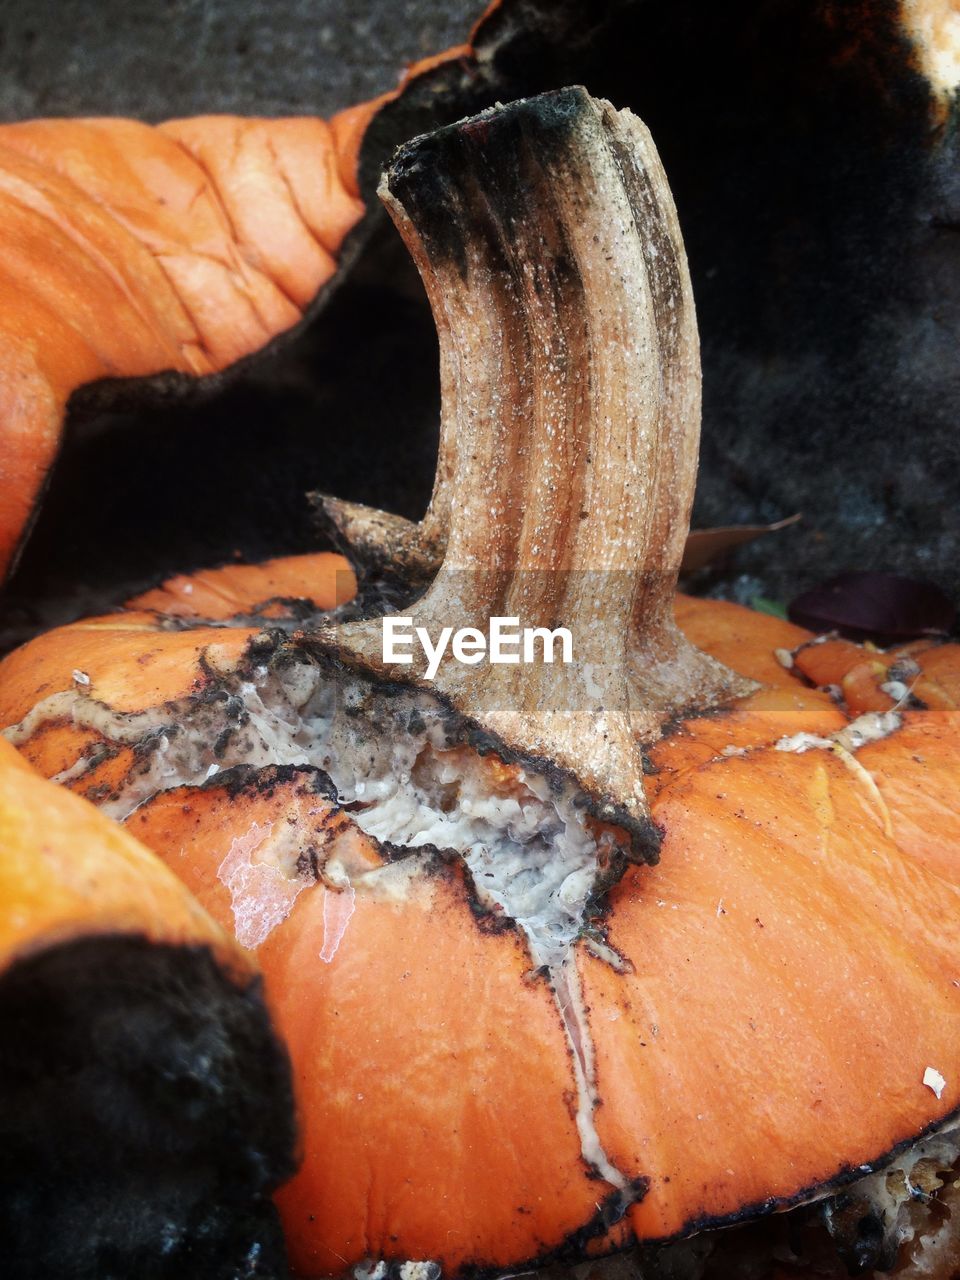 Close-up of damaged pumpkins during autumn